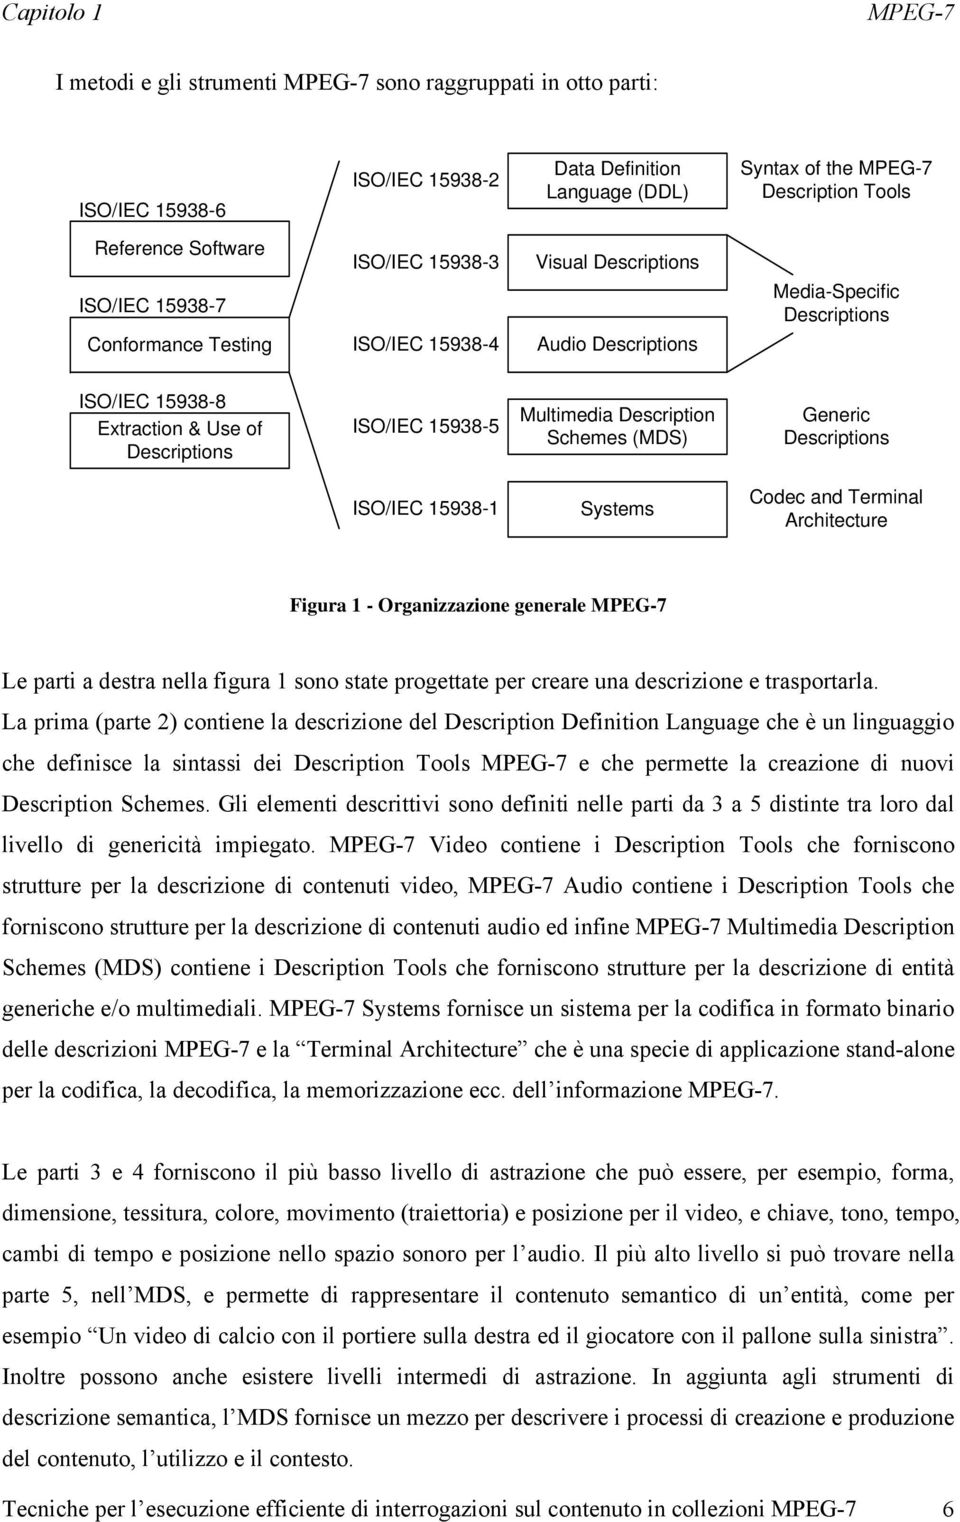 ISO/IEC 15938-5 Multimedia Description Schemes (MDS) Generic Descriptions ISO/IEC 15938-1 Systems Codec and Terminal Architecture Figura 1 - Organizzazione generale MPEG-7 Le parti a destra nella